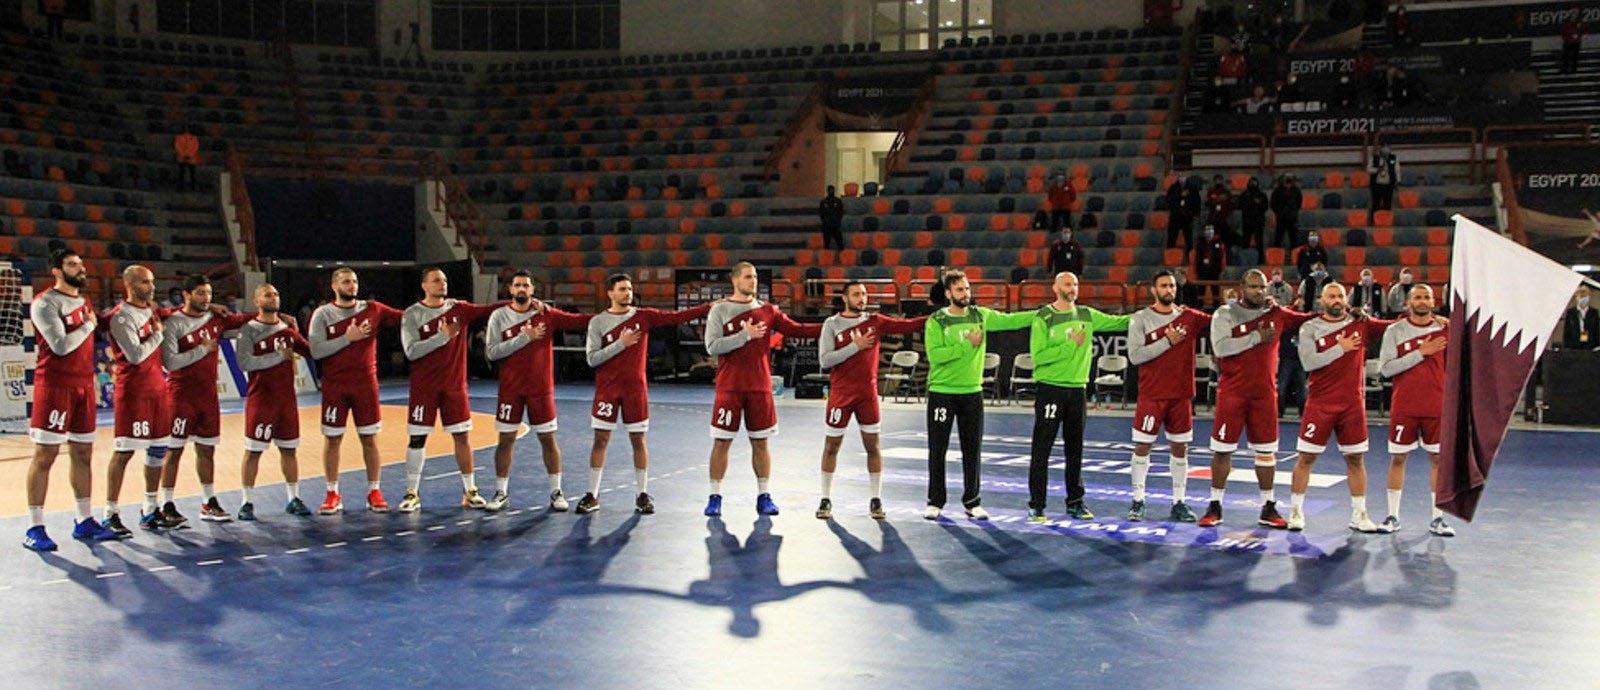 Qatar men's national handball team